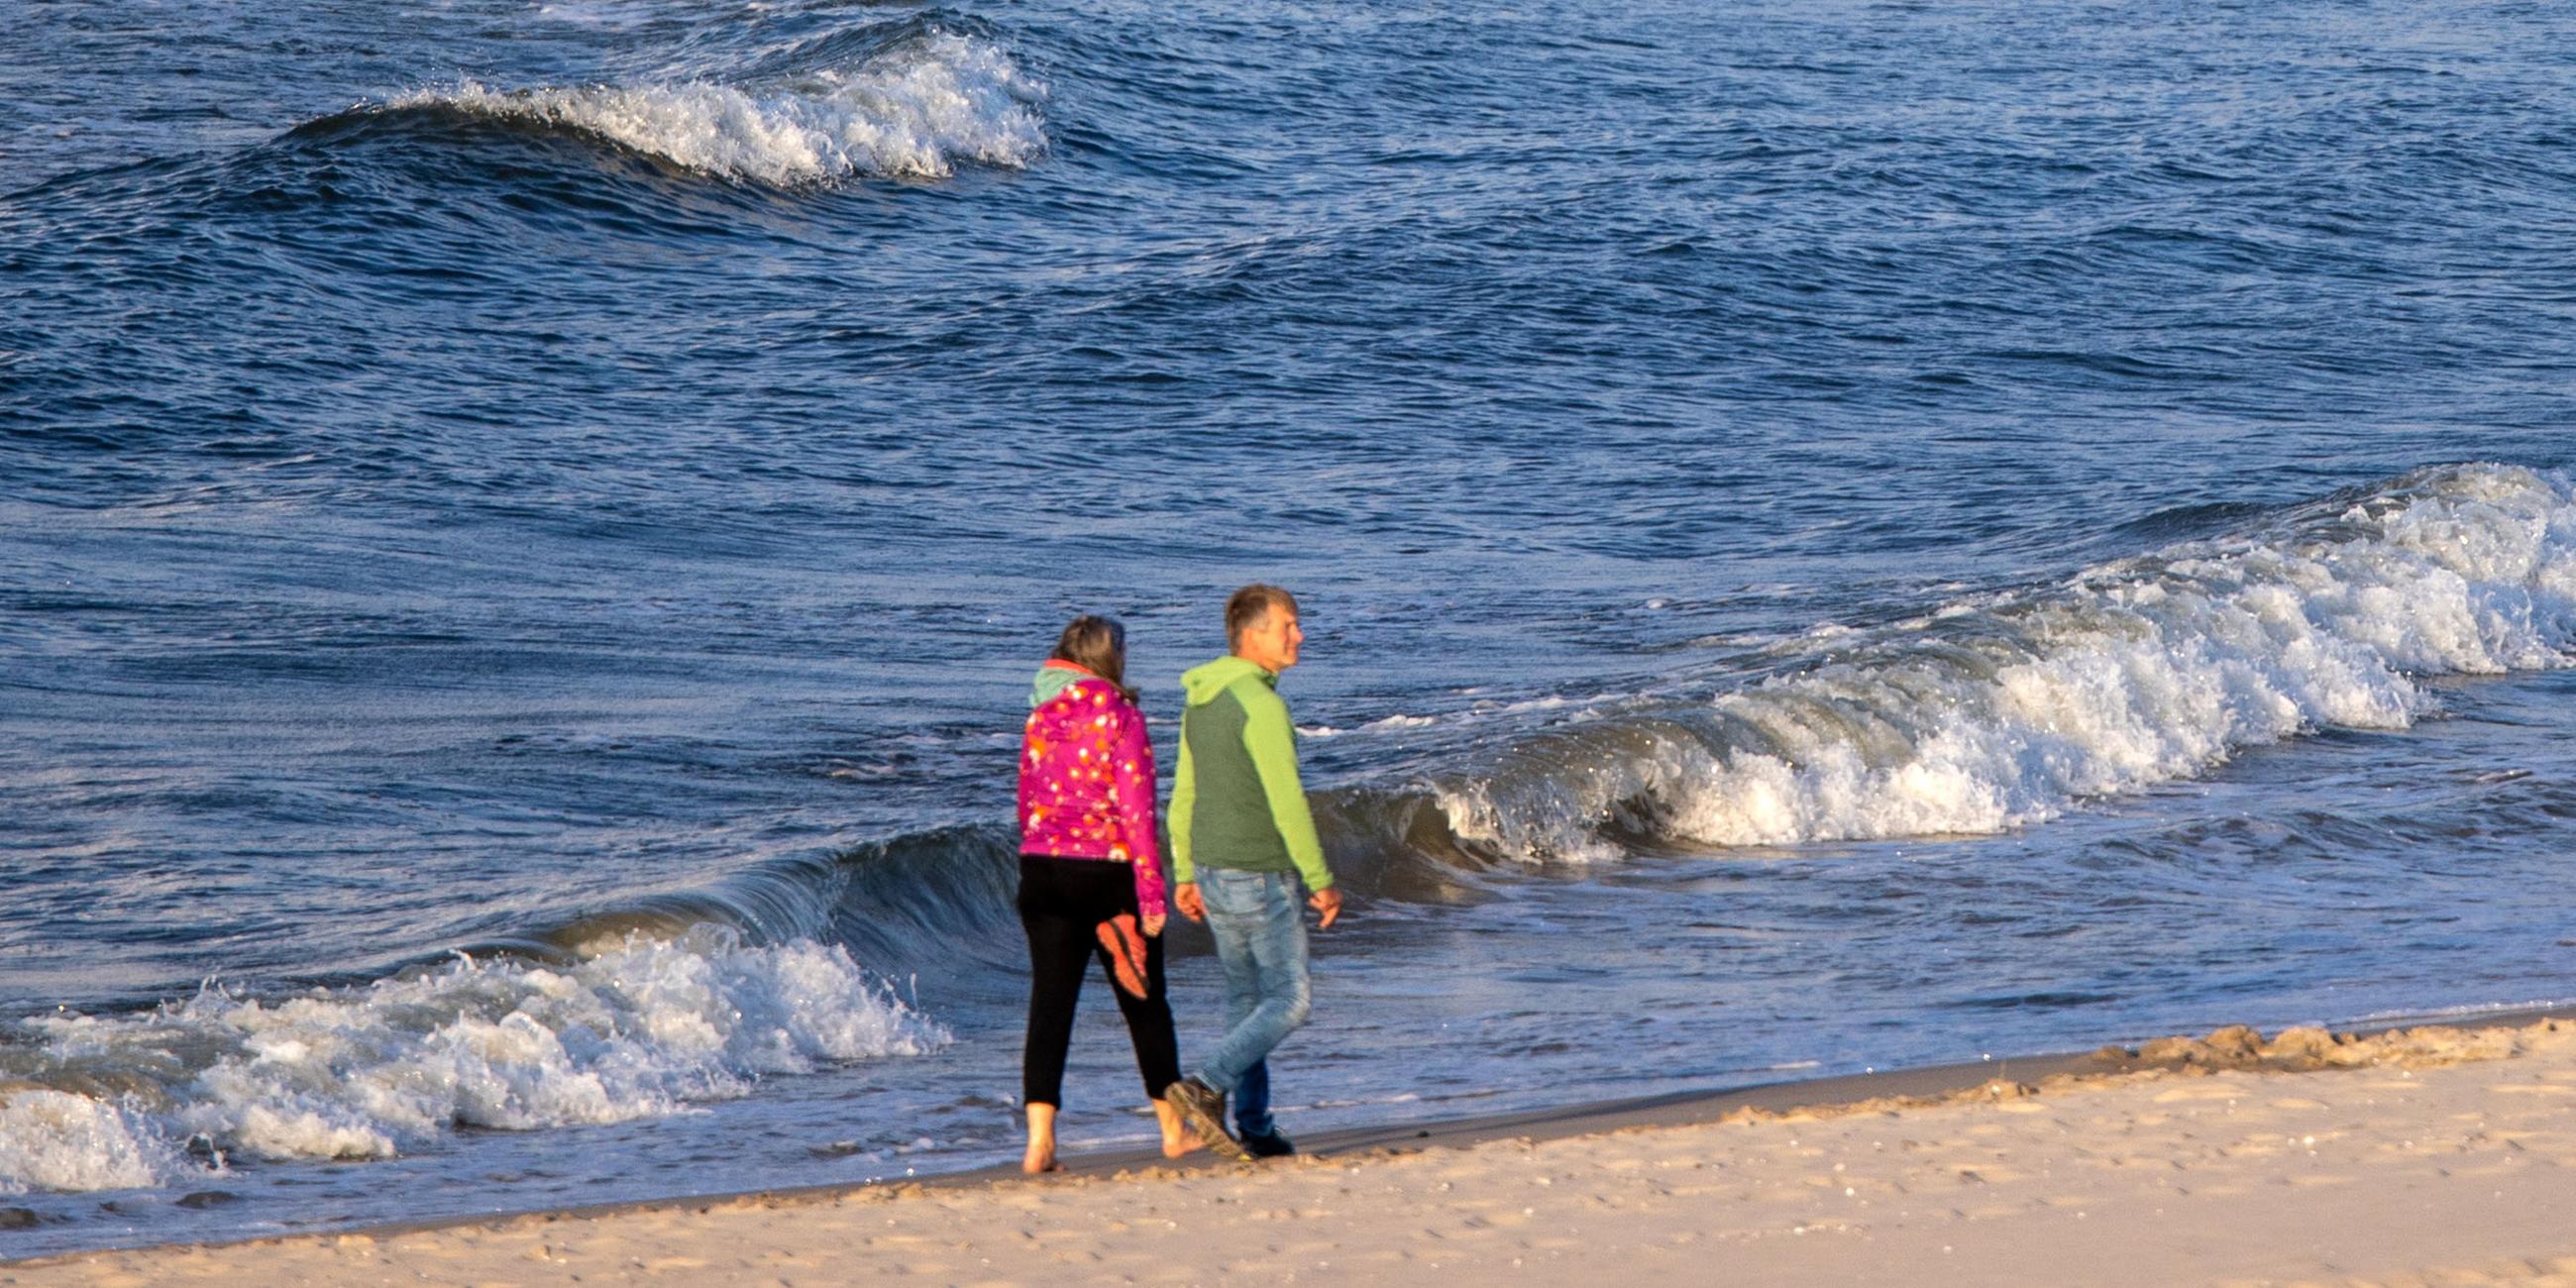 Spaziergänger gehen bei starkem Wind und kräftigem Wellengang auf der Ostsee am Strand der Insel Usedom am 12.06.2021 entlang.